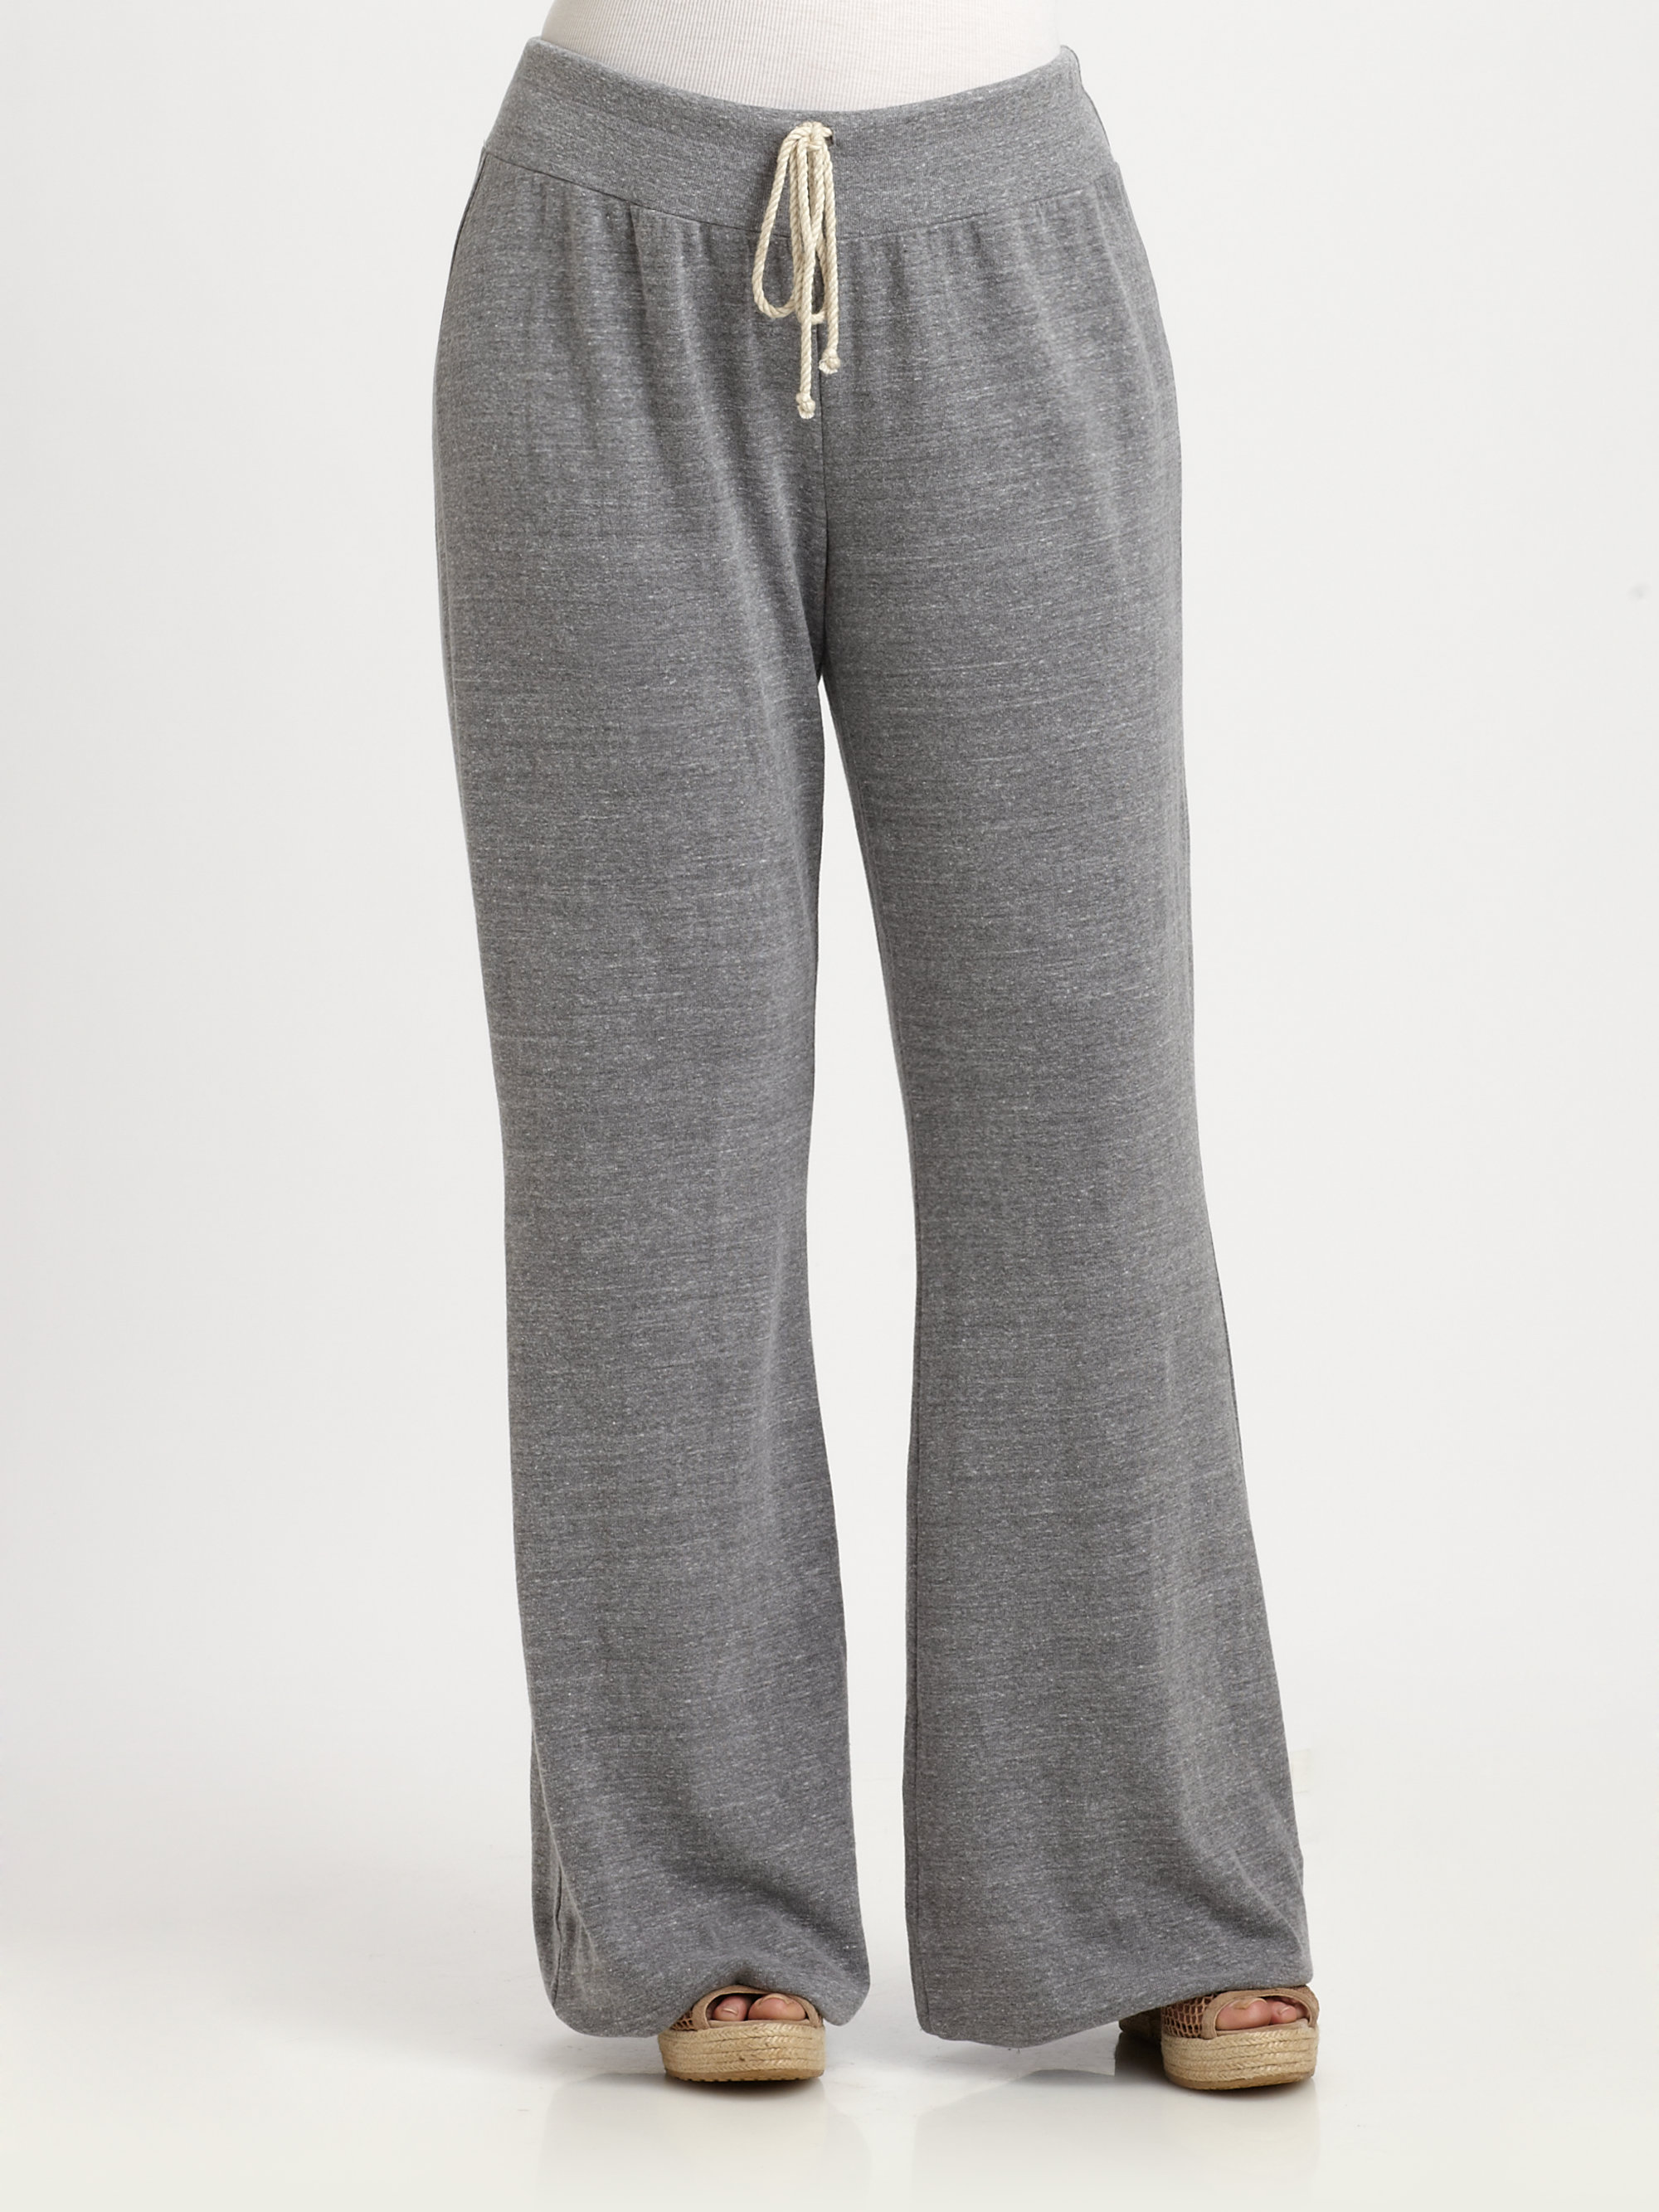 Lyst - Splendid Flare Sweatpants in Gray